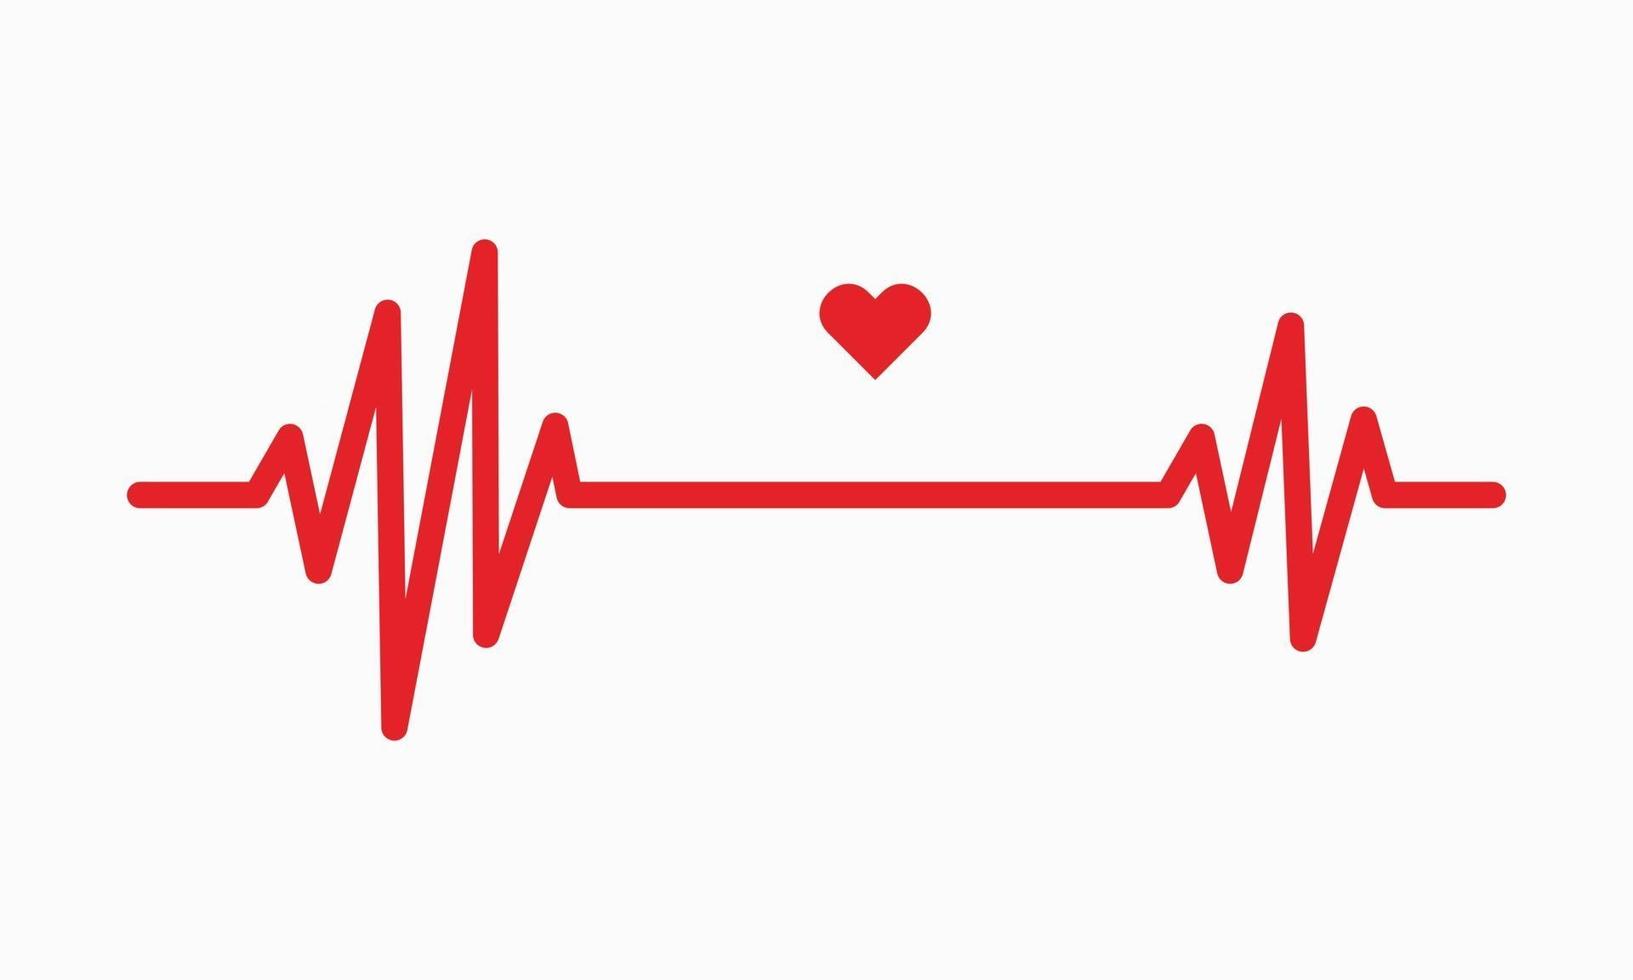 hjärtslag linje illustration puls spår ekg eller ekg kardiograf symbol för hälsosam och medicinsk analys vektorillustration vektor